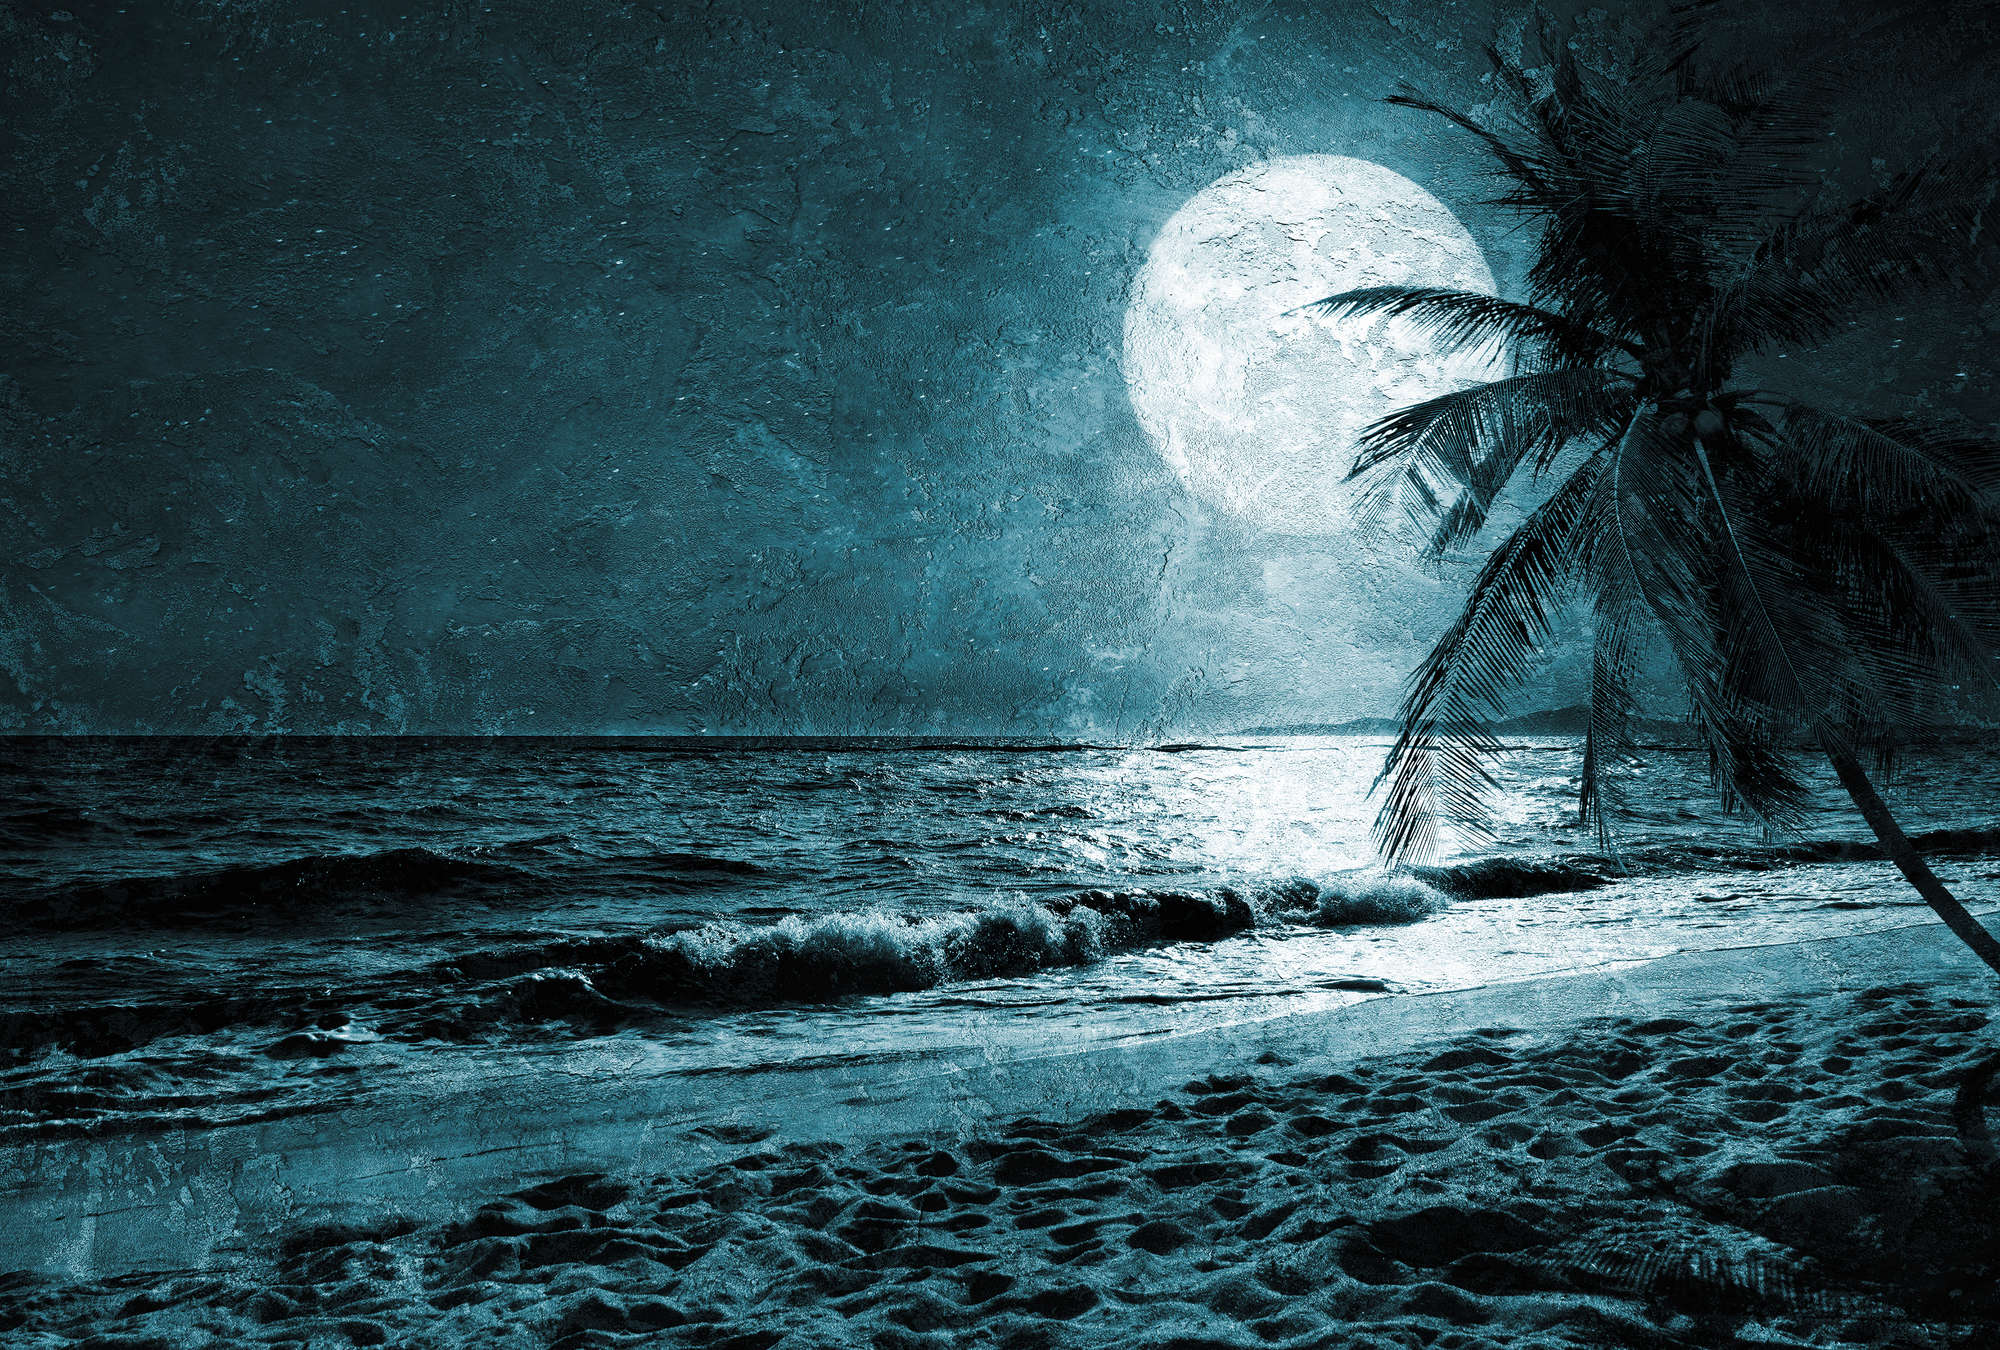             Papel pintado de playa con palmeras y mar de noche - Azul, blanco, negro
        